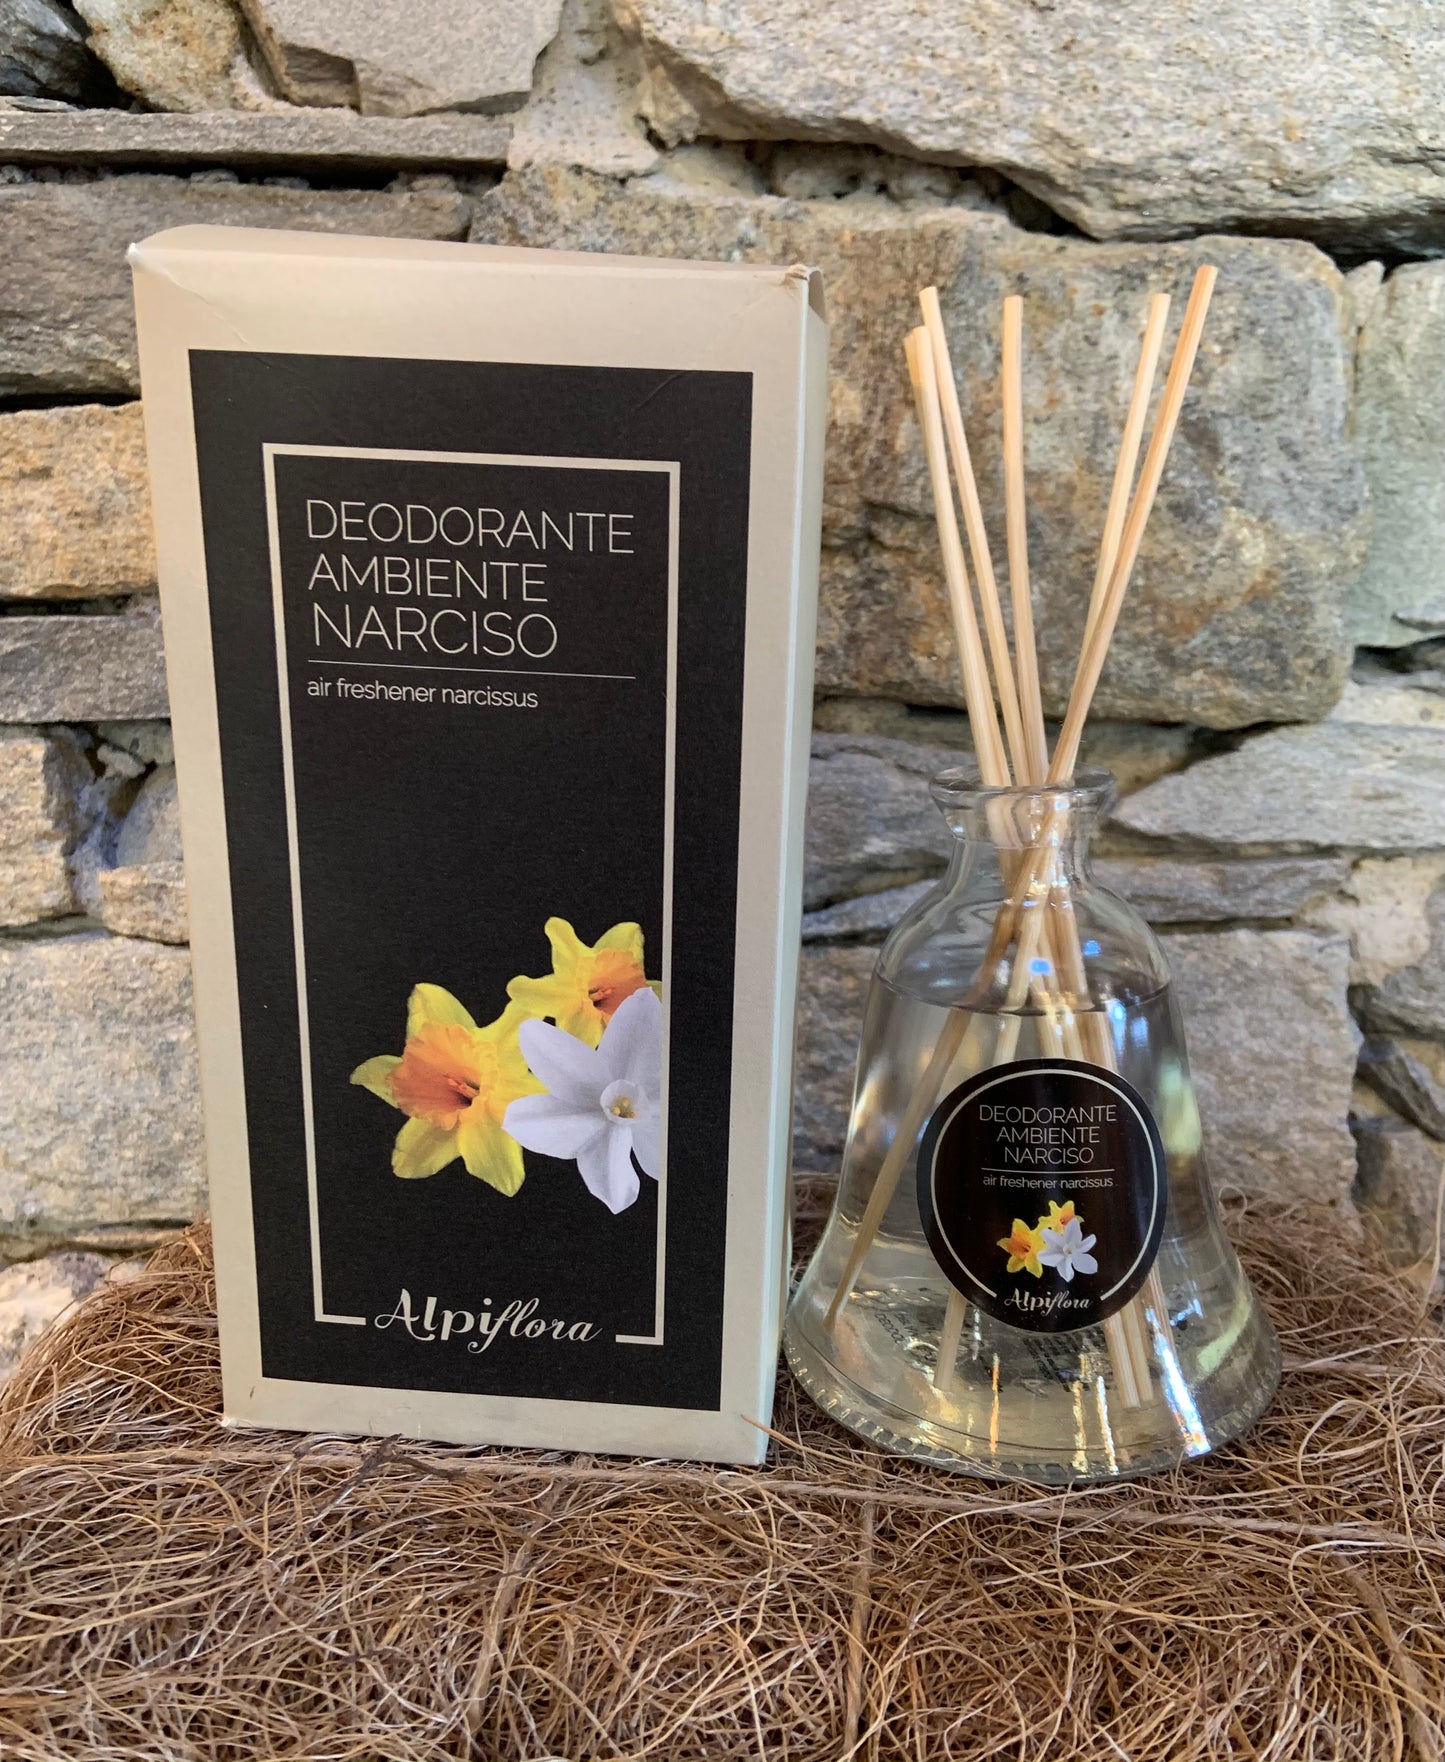 Deodorante ambiente Narciso 200ml